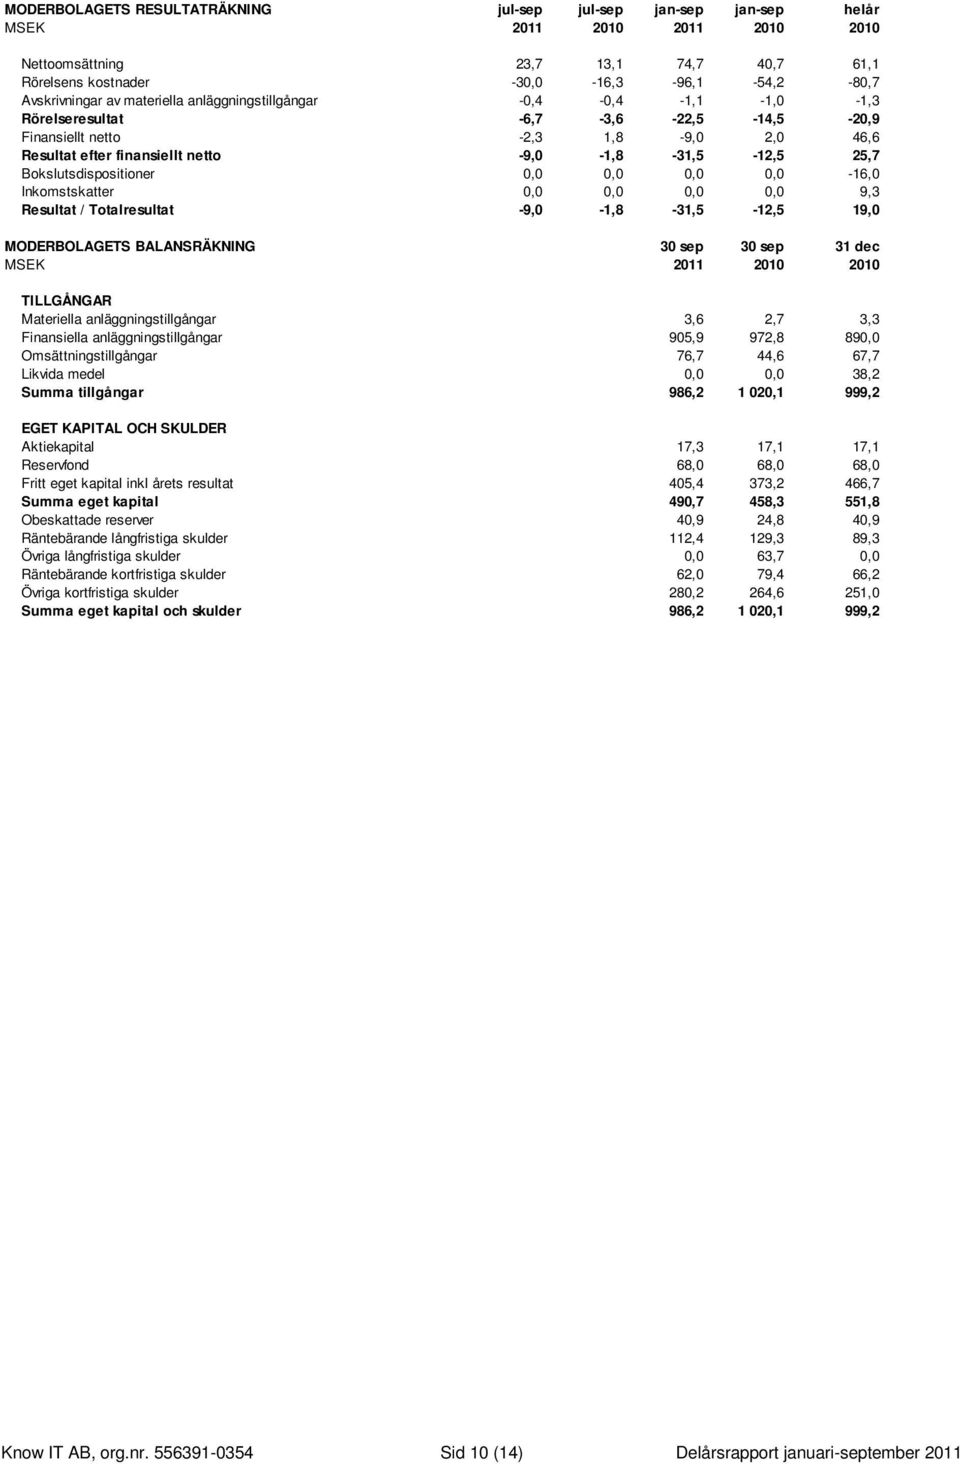 Bokslutsdispositioner 0,0 0,0 0,0 0,0-16,0 Inkomstskatter 0,0 0,0 0,0 0,0 9,3 Resultat / Totalresultat -9,0-1,8-31,5-12,5 19,0 MODERBOLAGETS BALANSRÄKNING 30 sep 30 sep 31 dec MSEK 2011 2010 2010